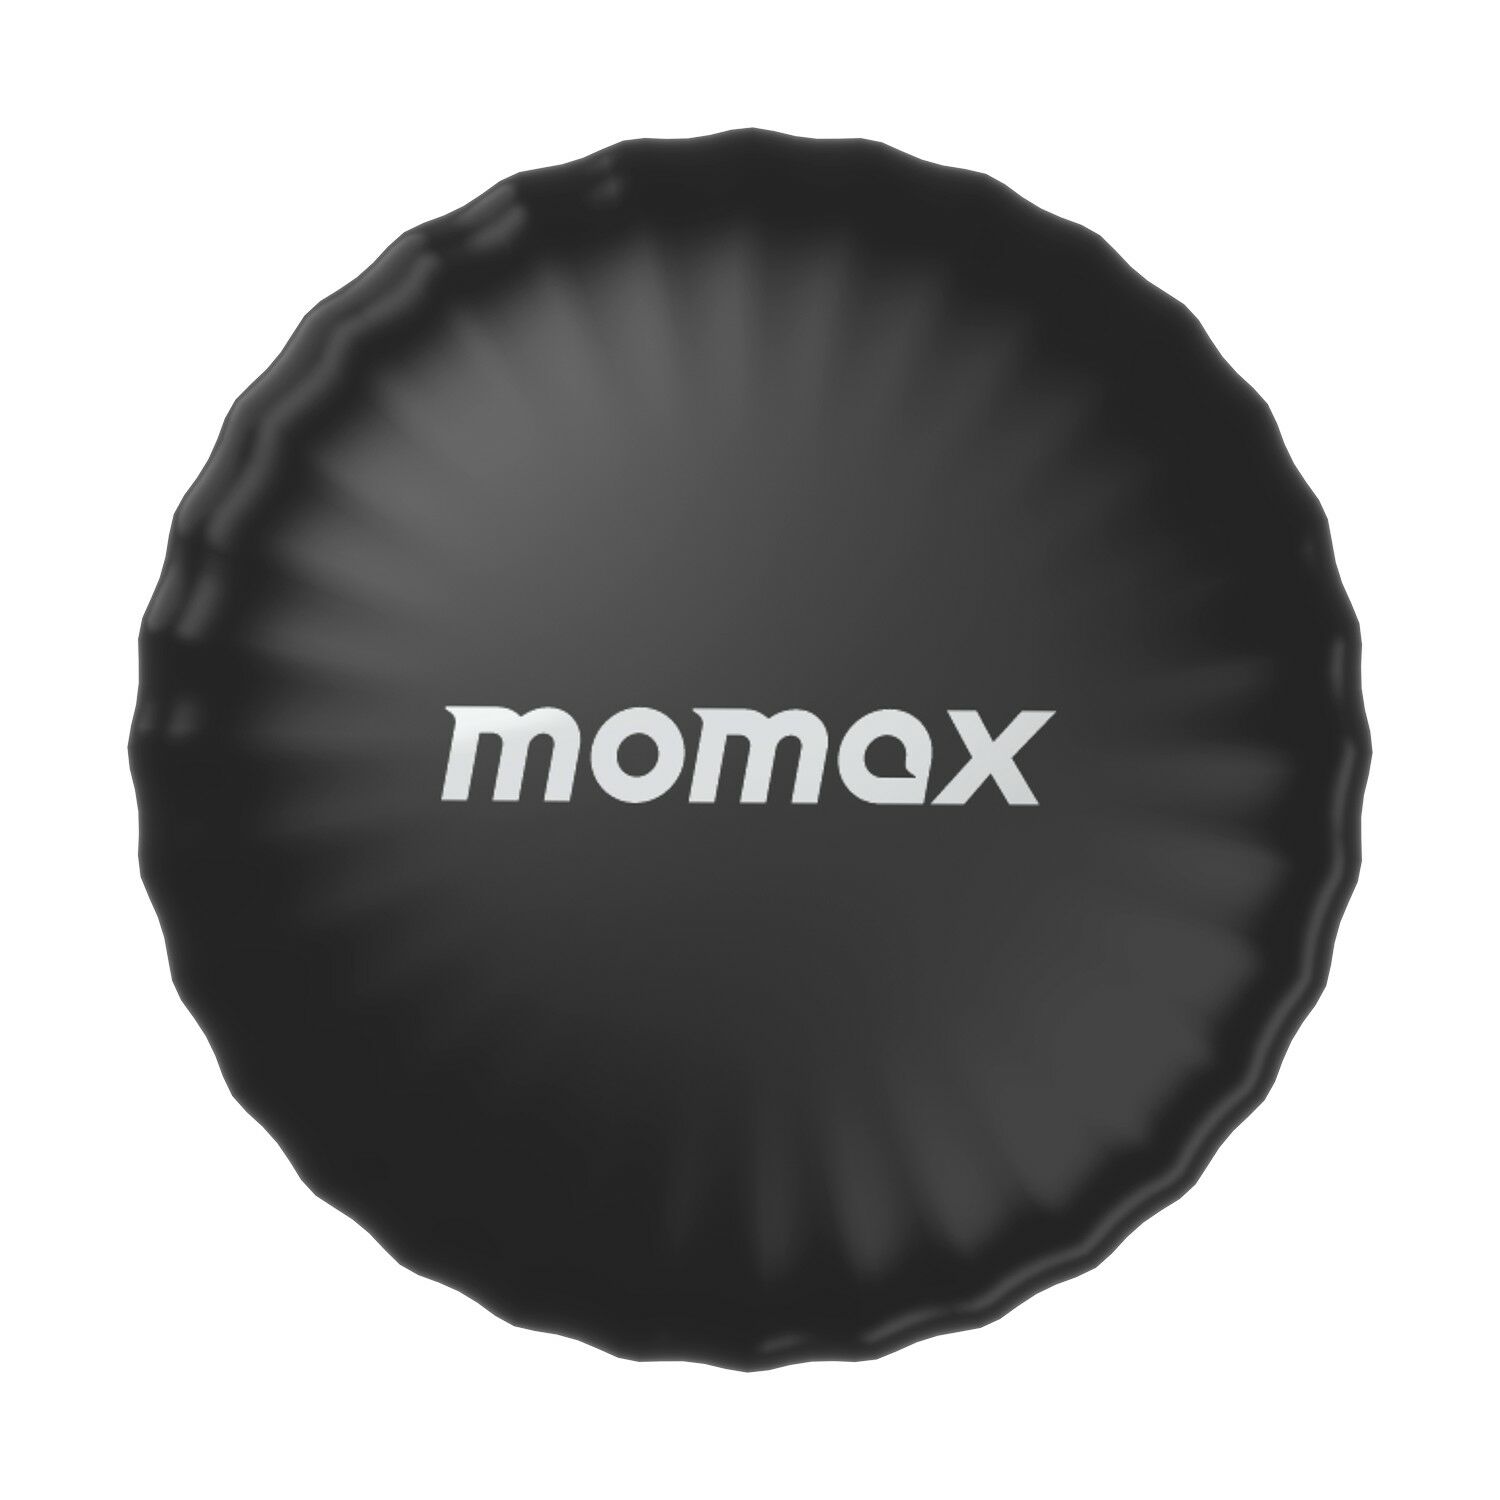 Momax PinTag Akıllı Takip Cihazı Siyah